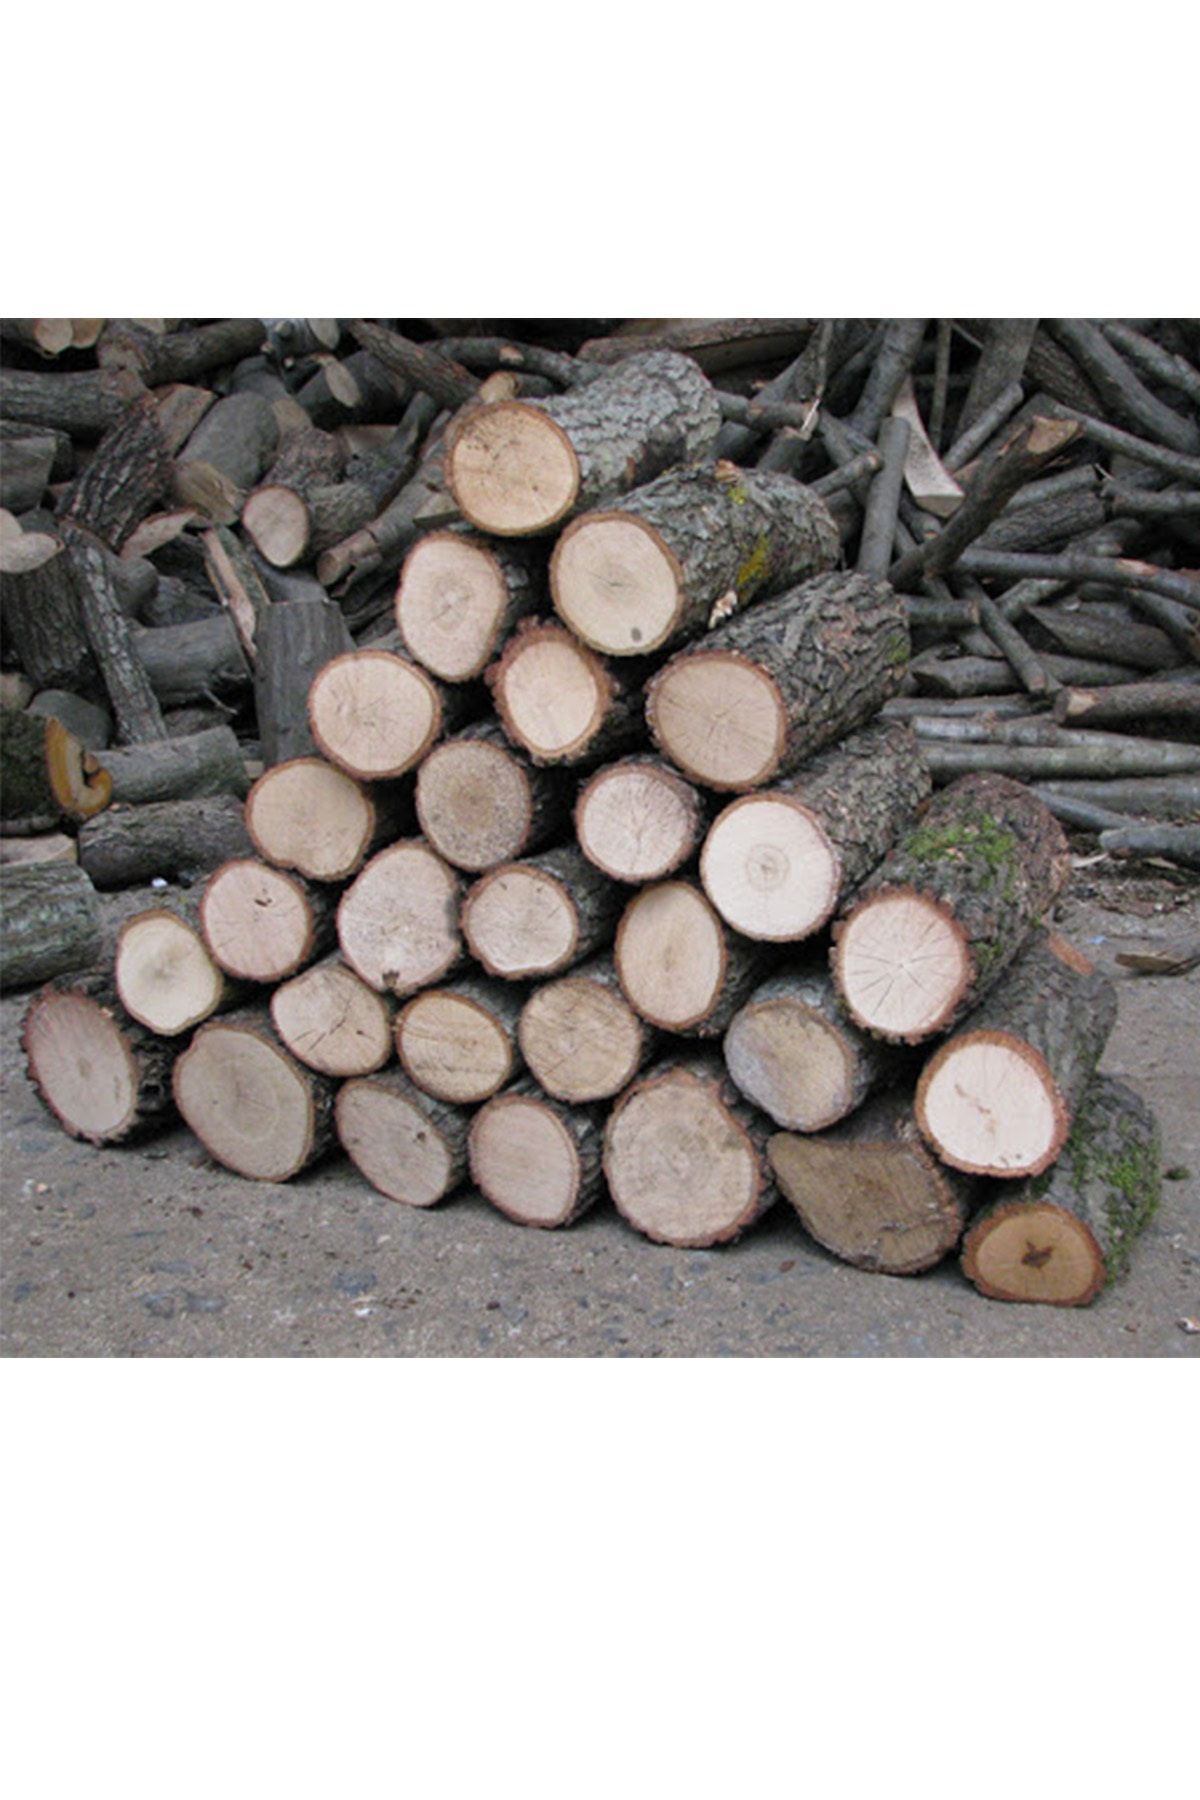 ACELEBOX 10 Kg Şöminelik Sobalık Meşe Odunu Hakiki Meşe Odunu